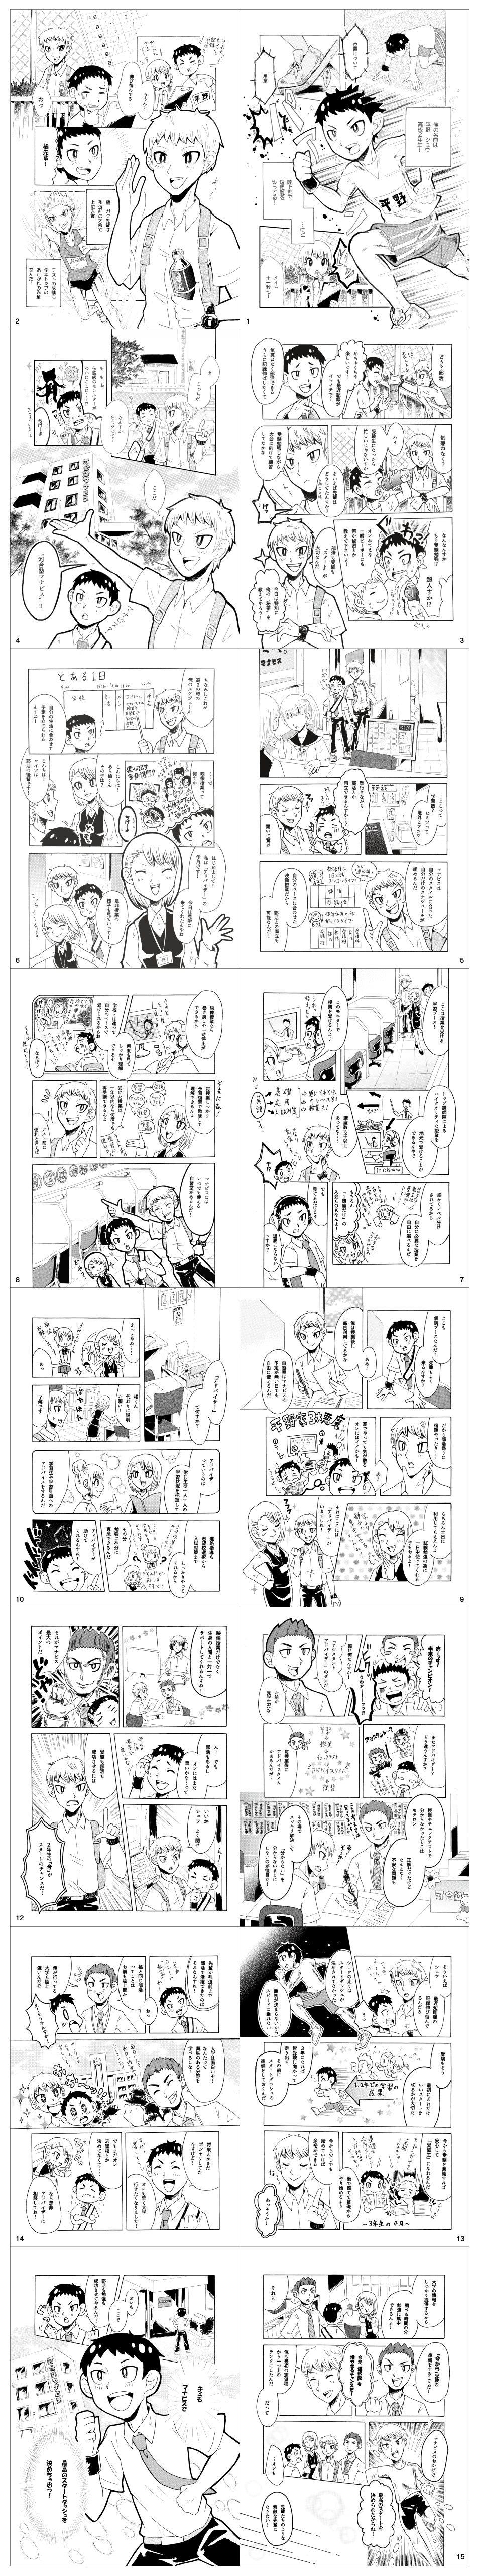 manga_page1